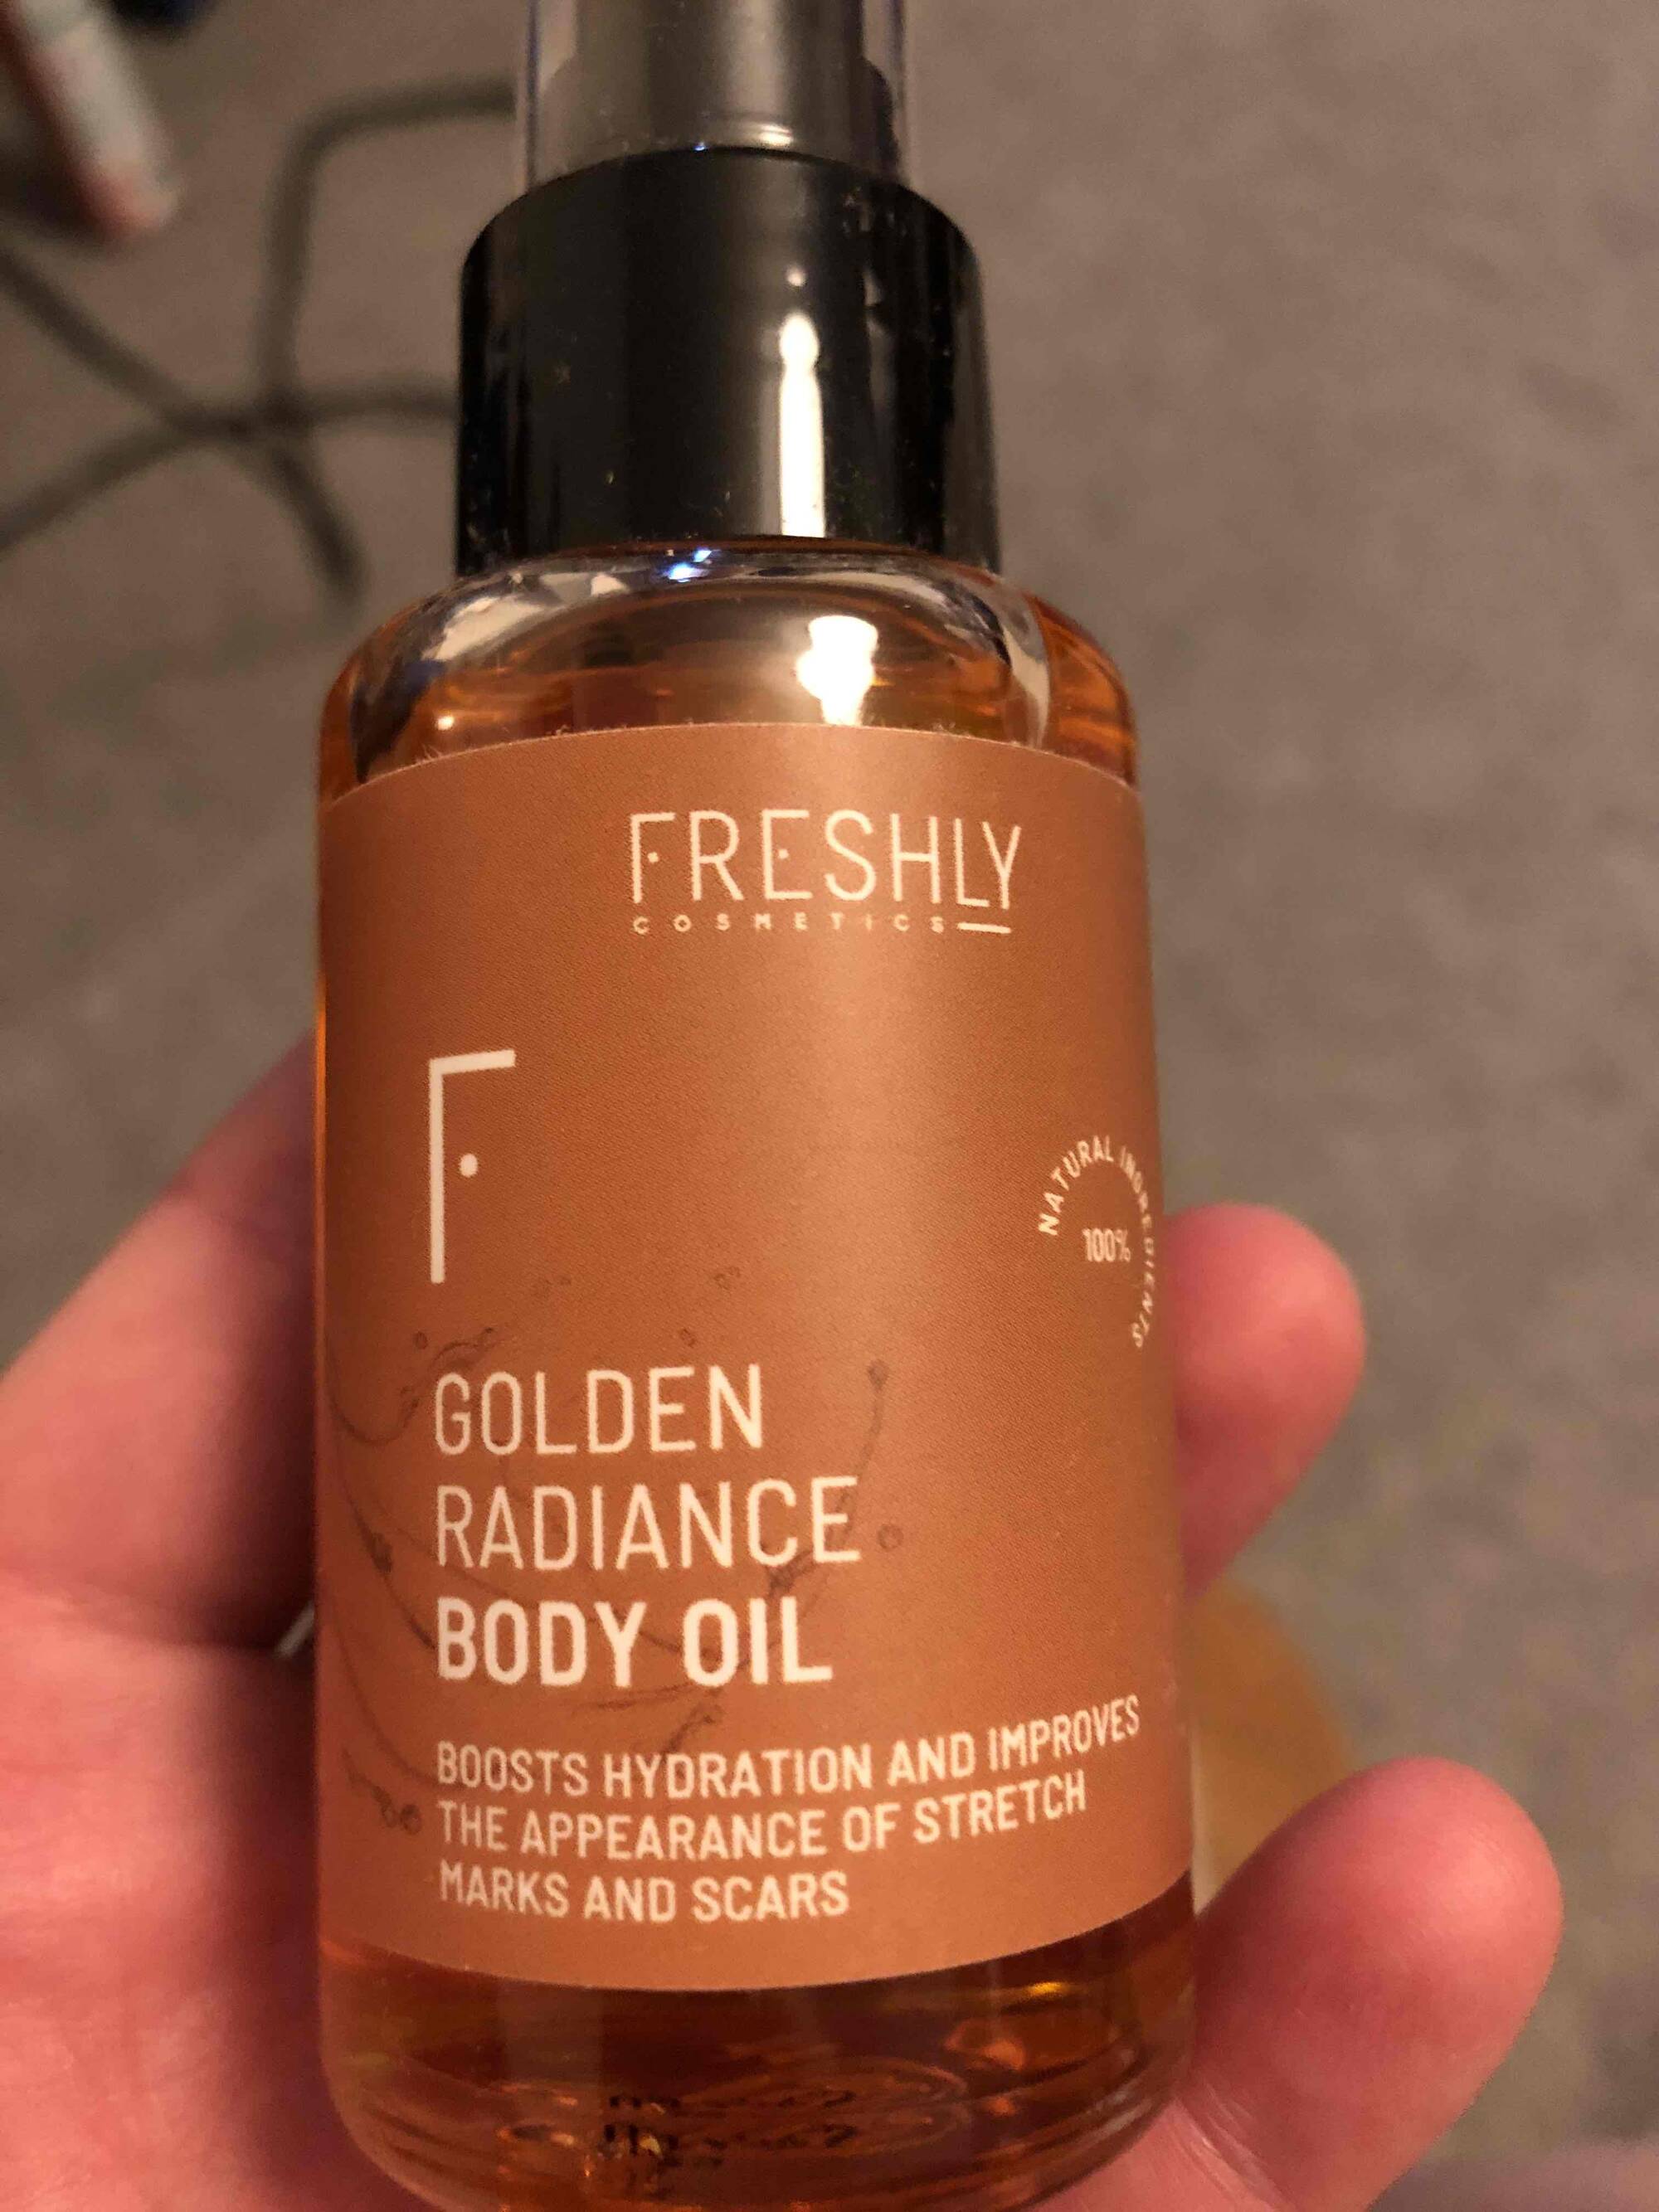 FRESHLY - Golden radiance body oil